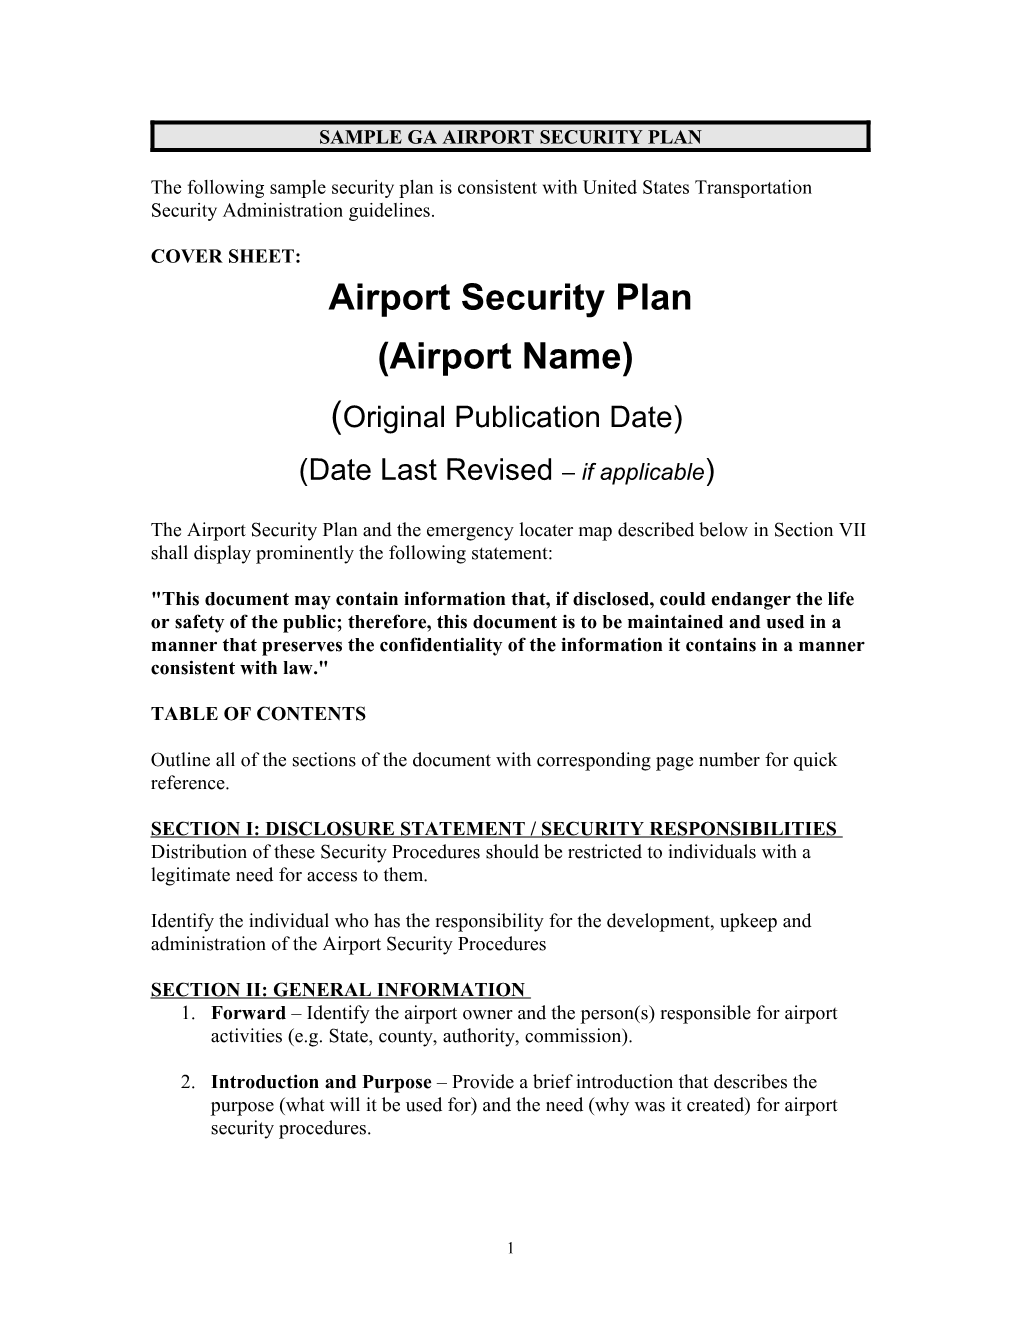 Sample Ga Airport Security Plan